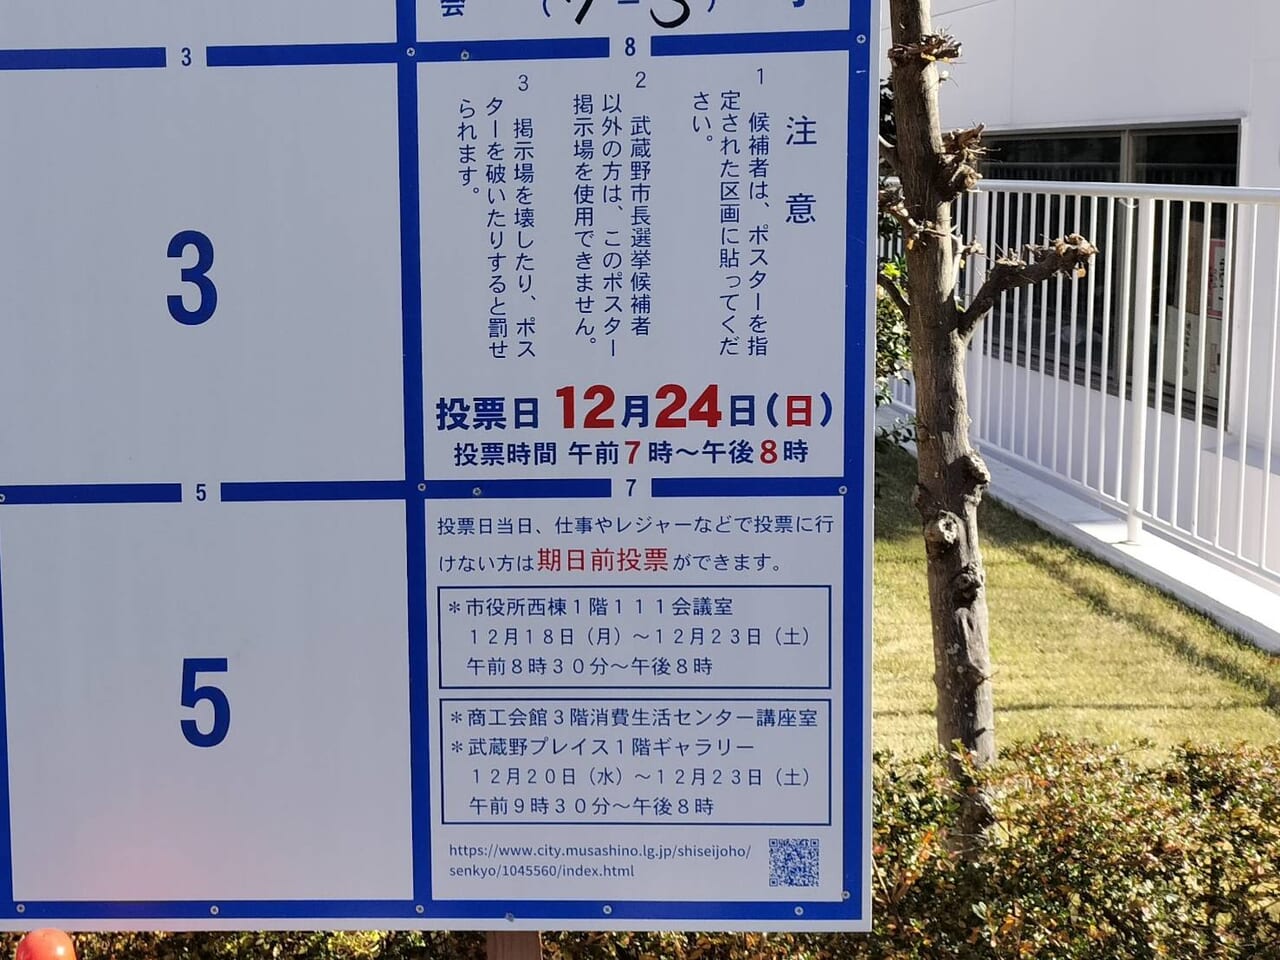 武蔵野市長選挙は12月24日で期日前投票もできます